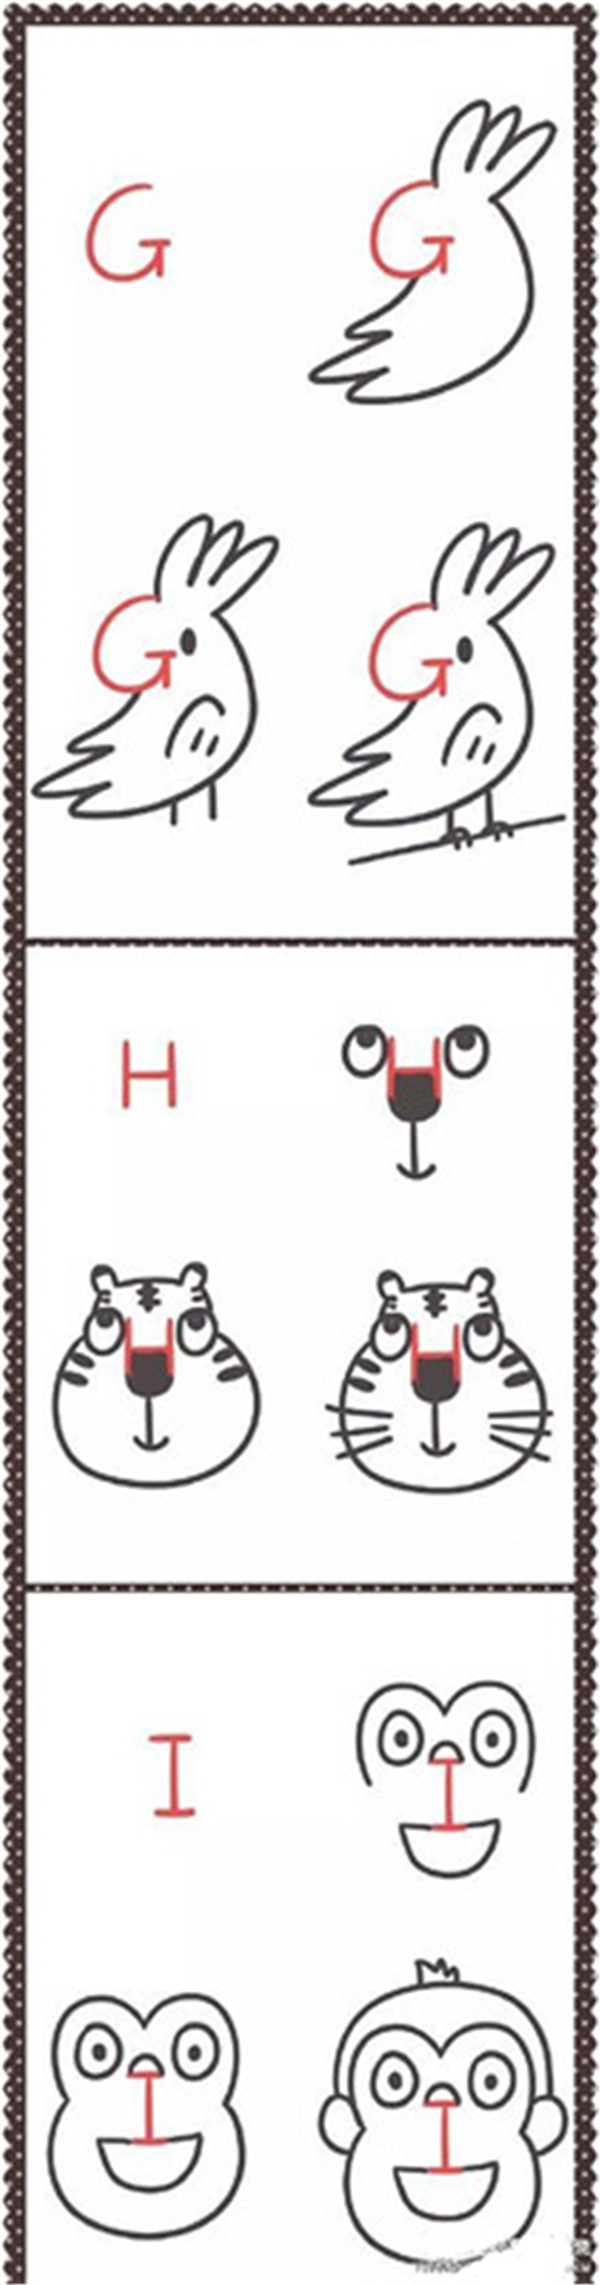 教你用字母画出小动物简笔画